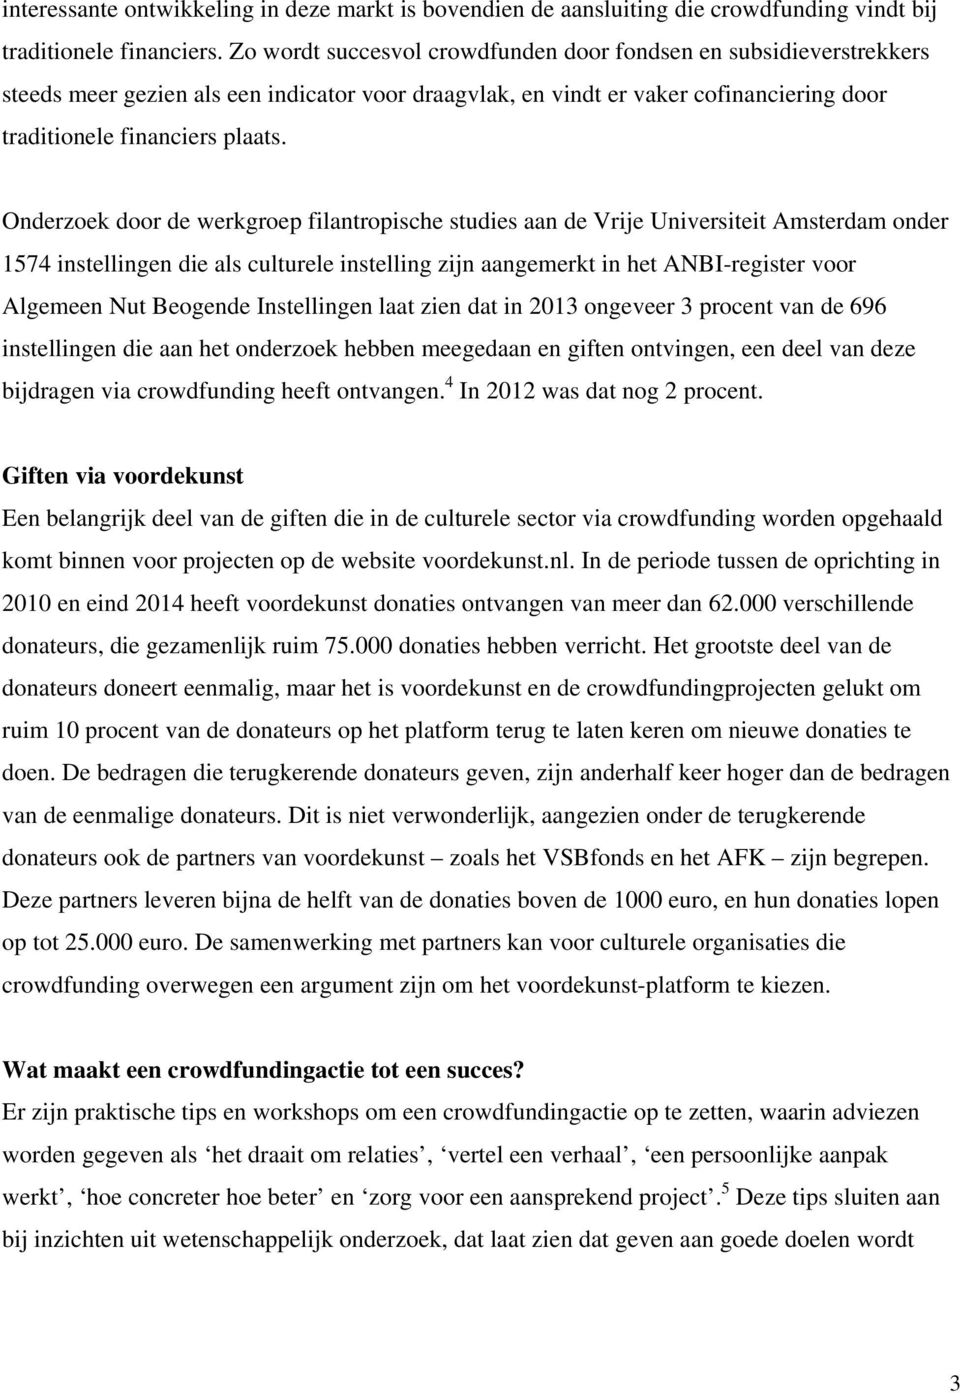 Onderzoek door de werkgroep filantropische studies aan de Vrije Universiteit Amsterdam onder 1574 instellingen die als culturele instelling zijn aangemerkt in het ANBI-register voor Algemeen Nut